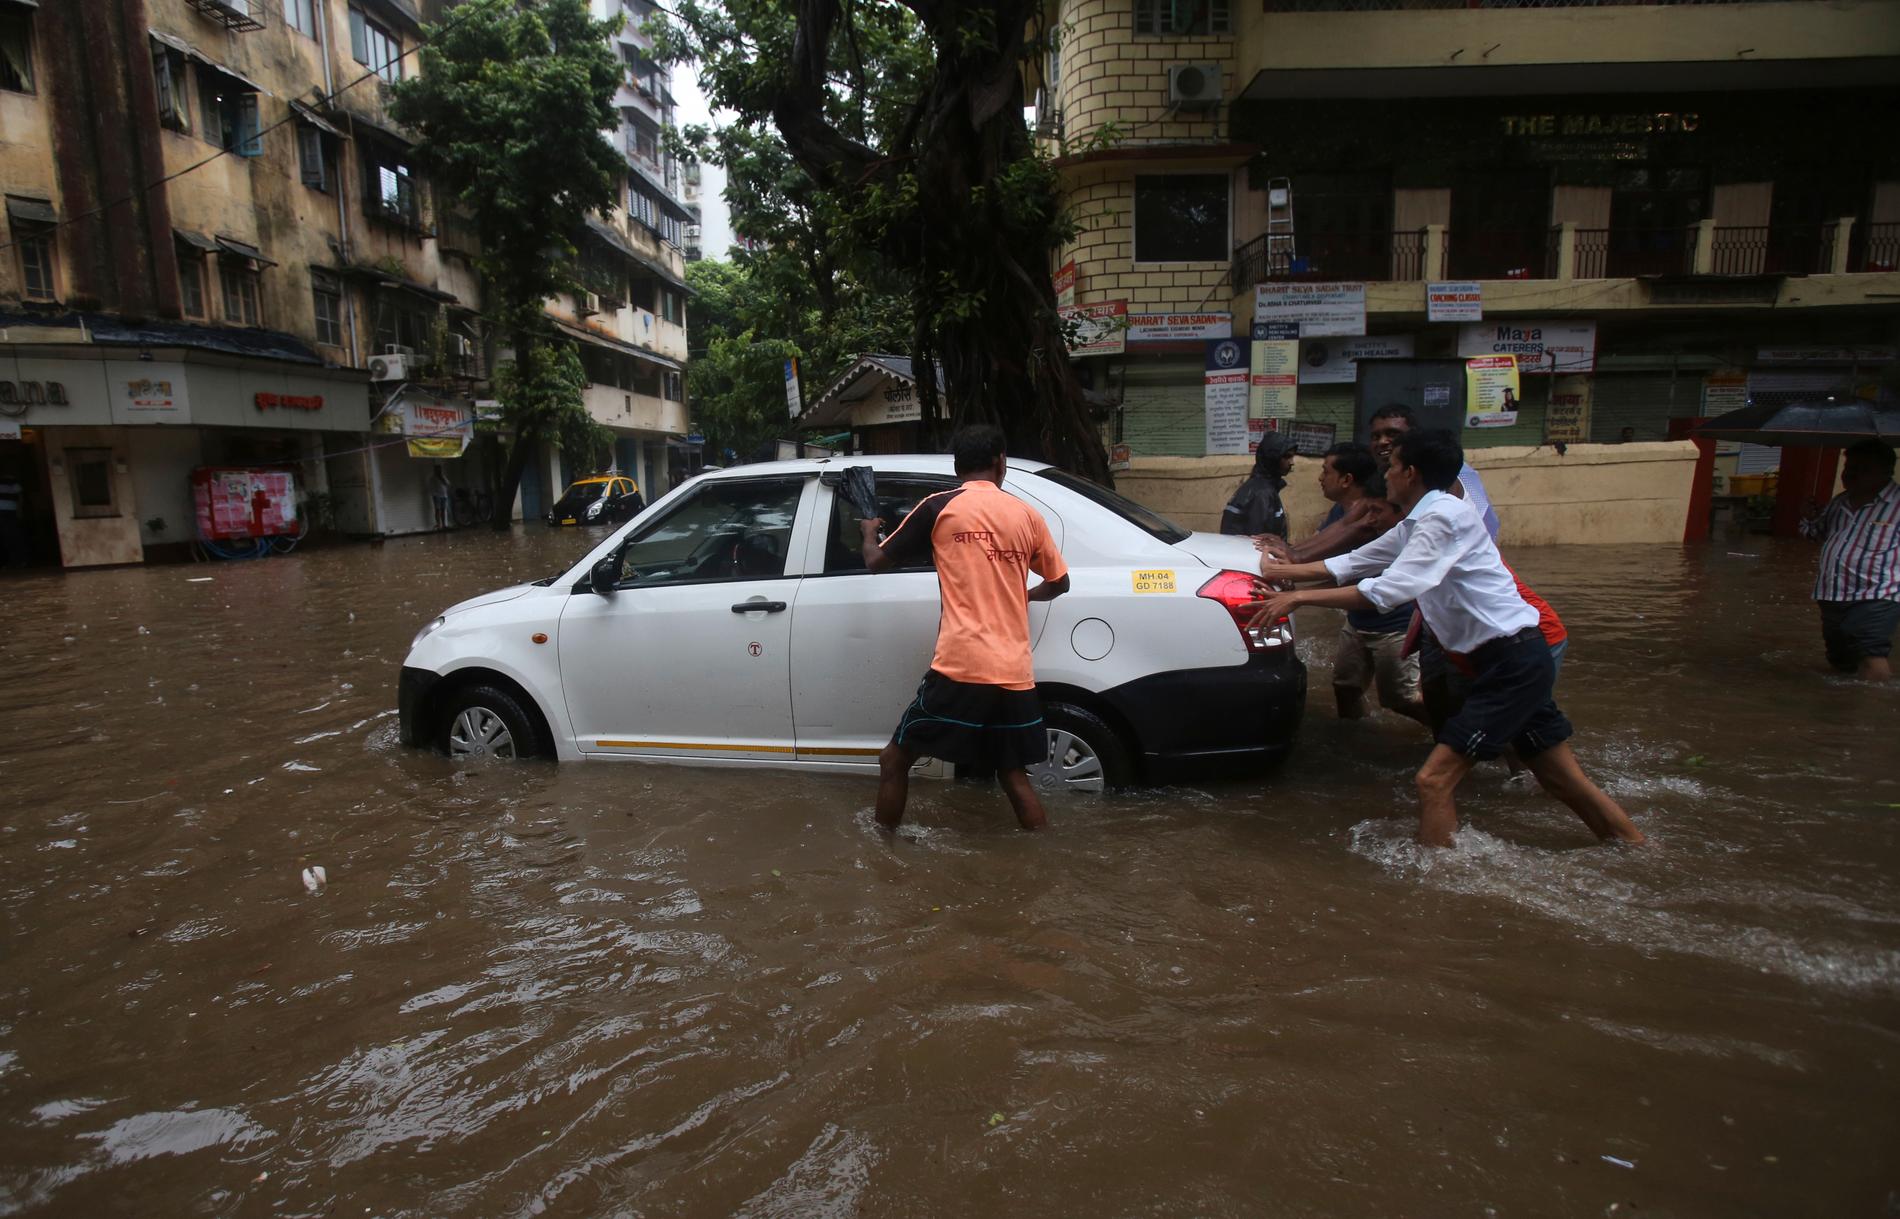 En översvämmad gata i Bombay i samband med monsunregnen.